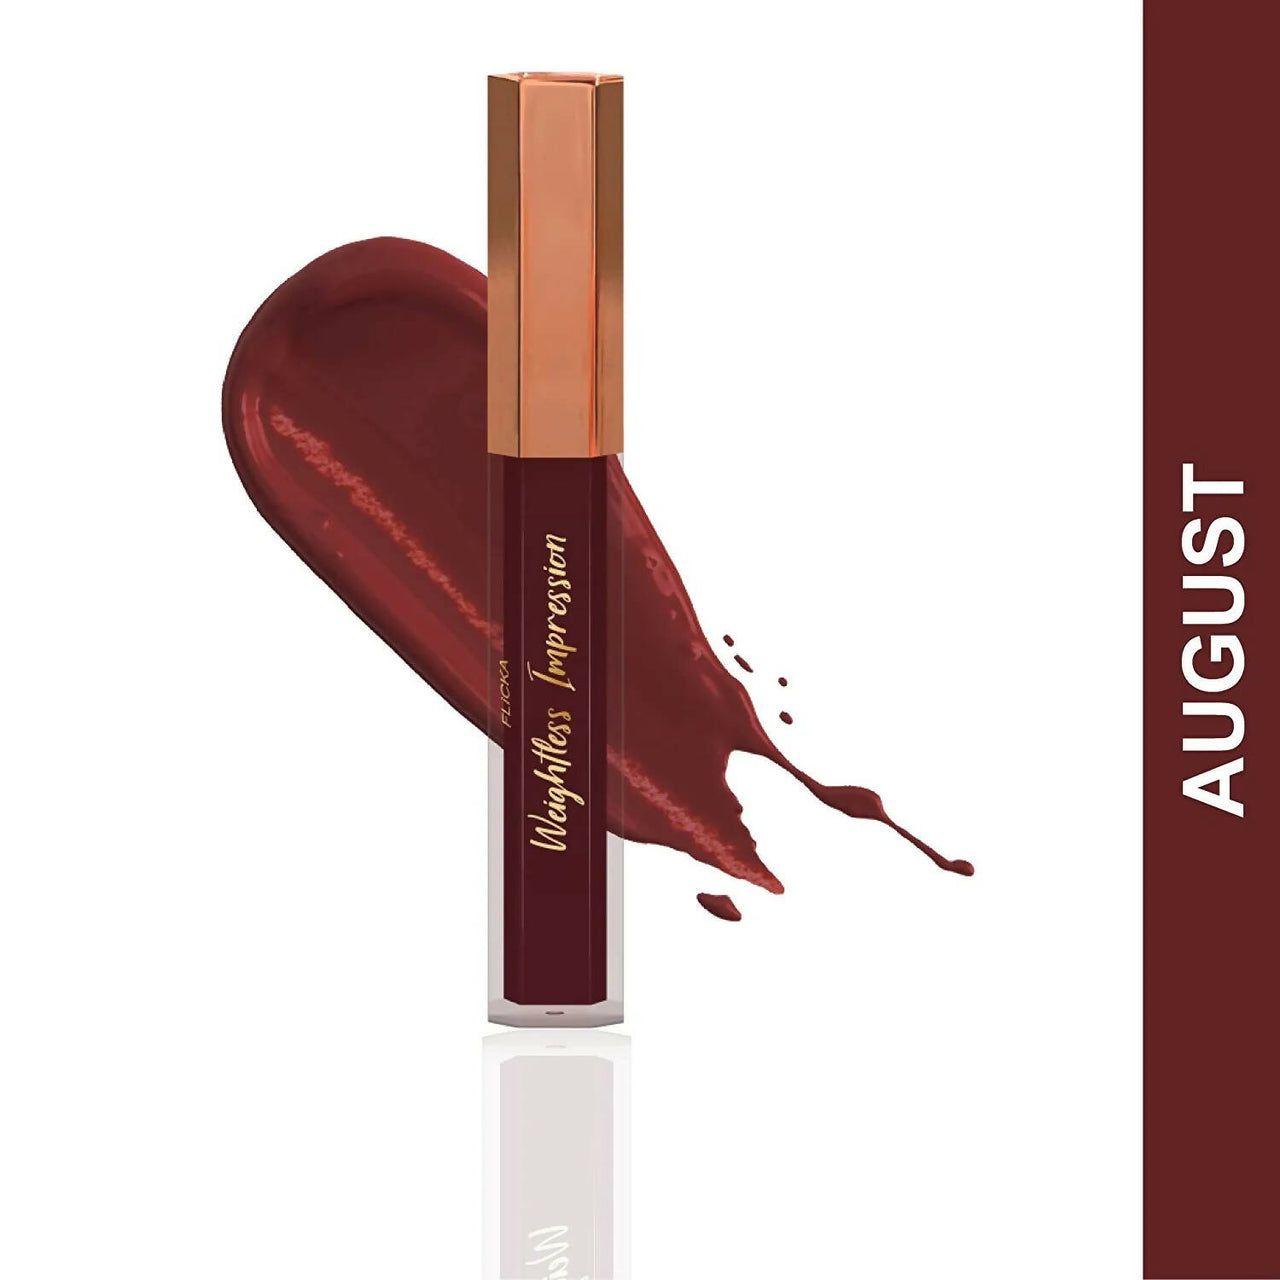 FLiCKA Weightless Impression 08 August - Maroon Matte Finish Liquid Lipstick - Distacart